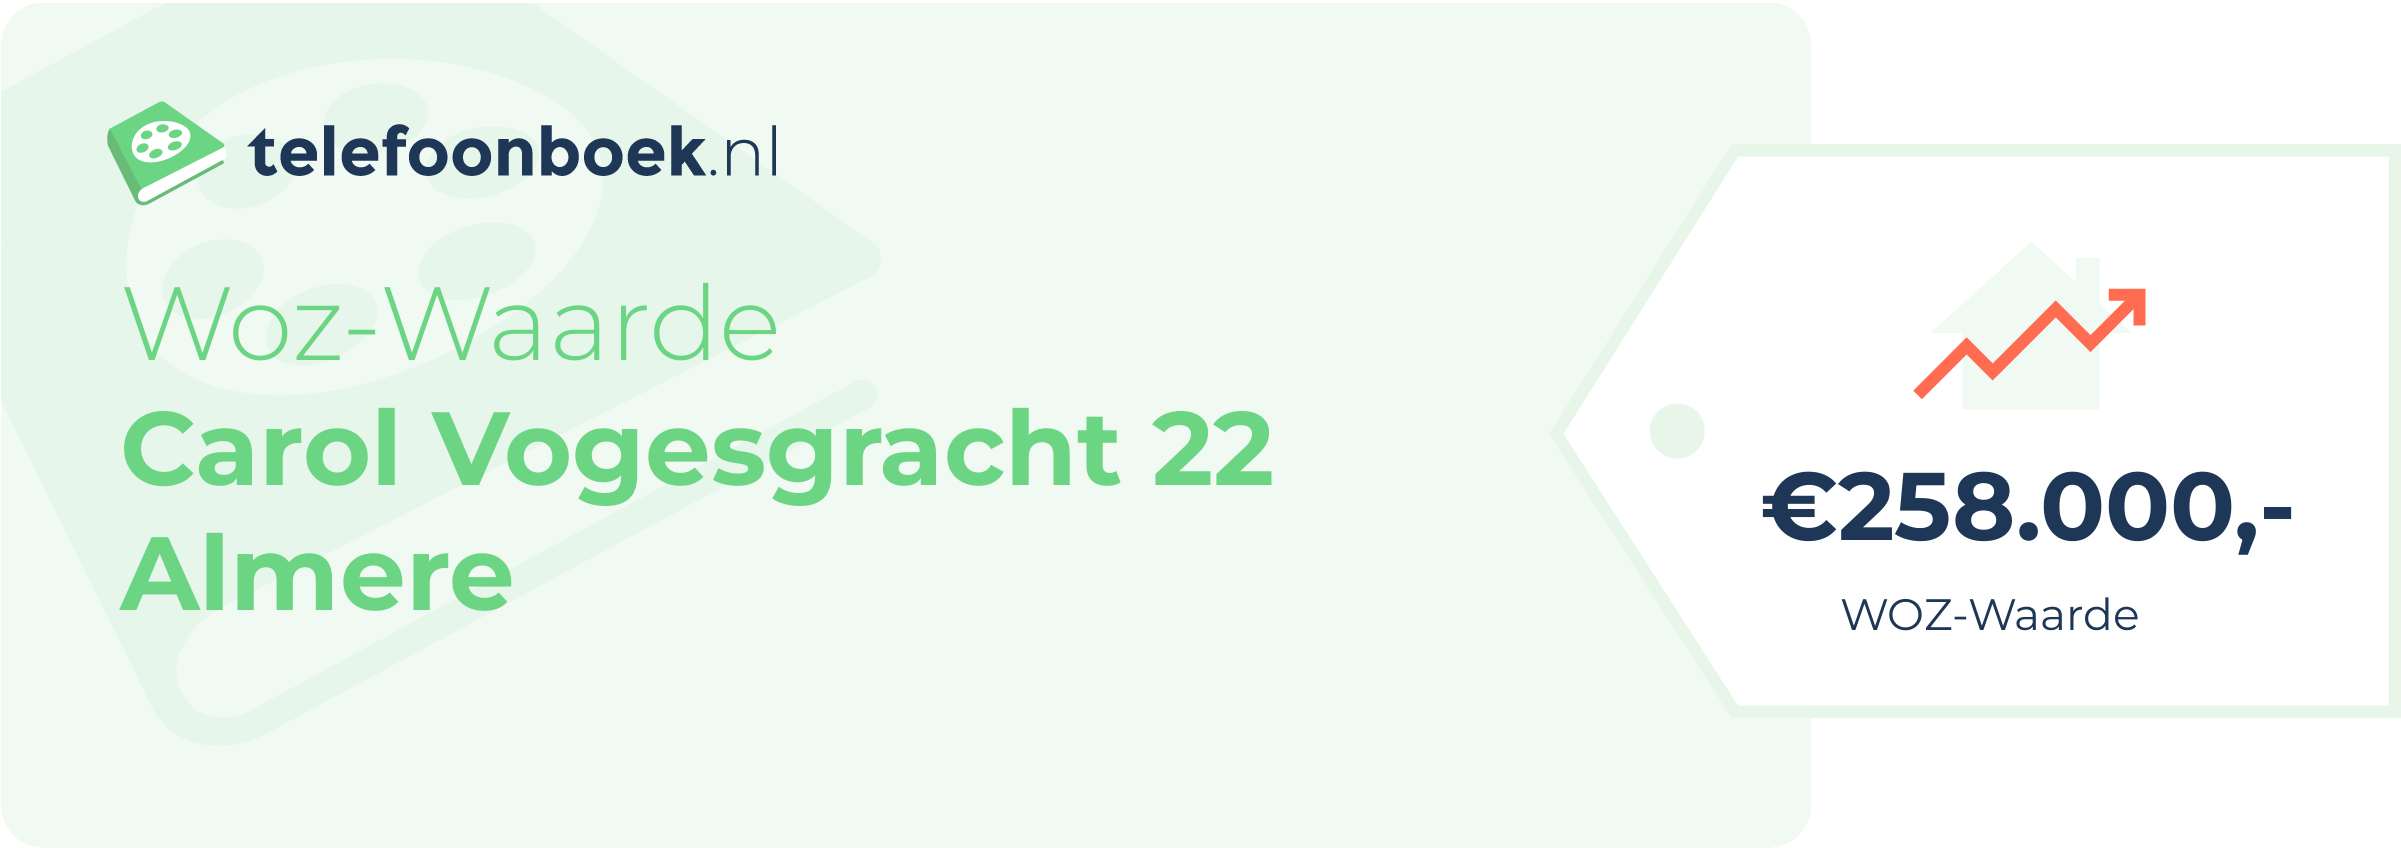 WOZ-waarde Carol Vogesgracht 22 Almere